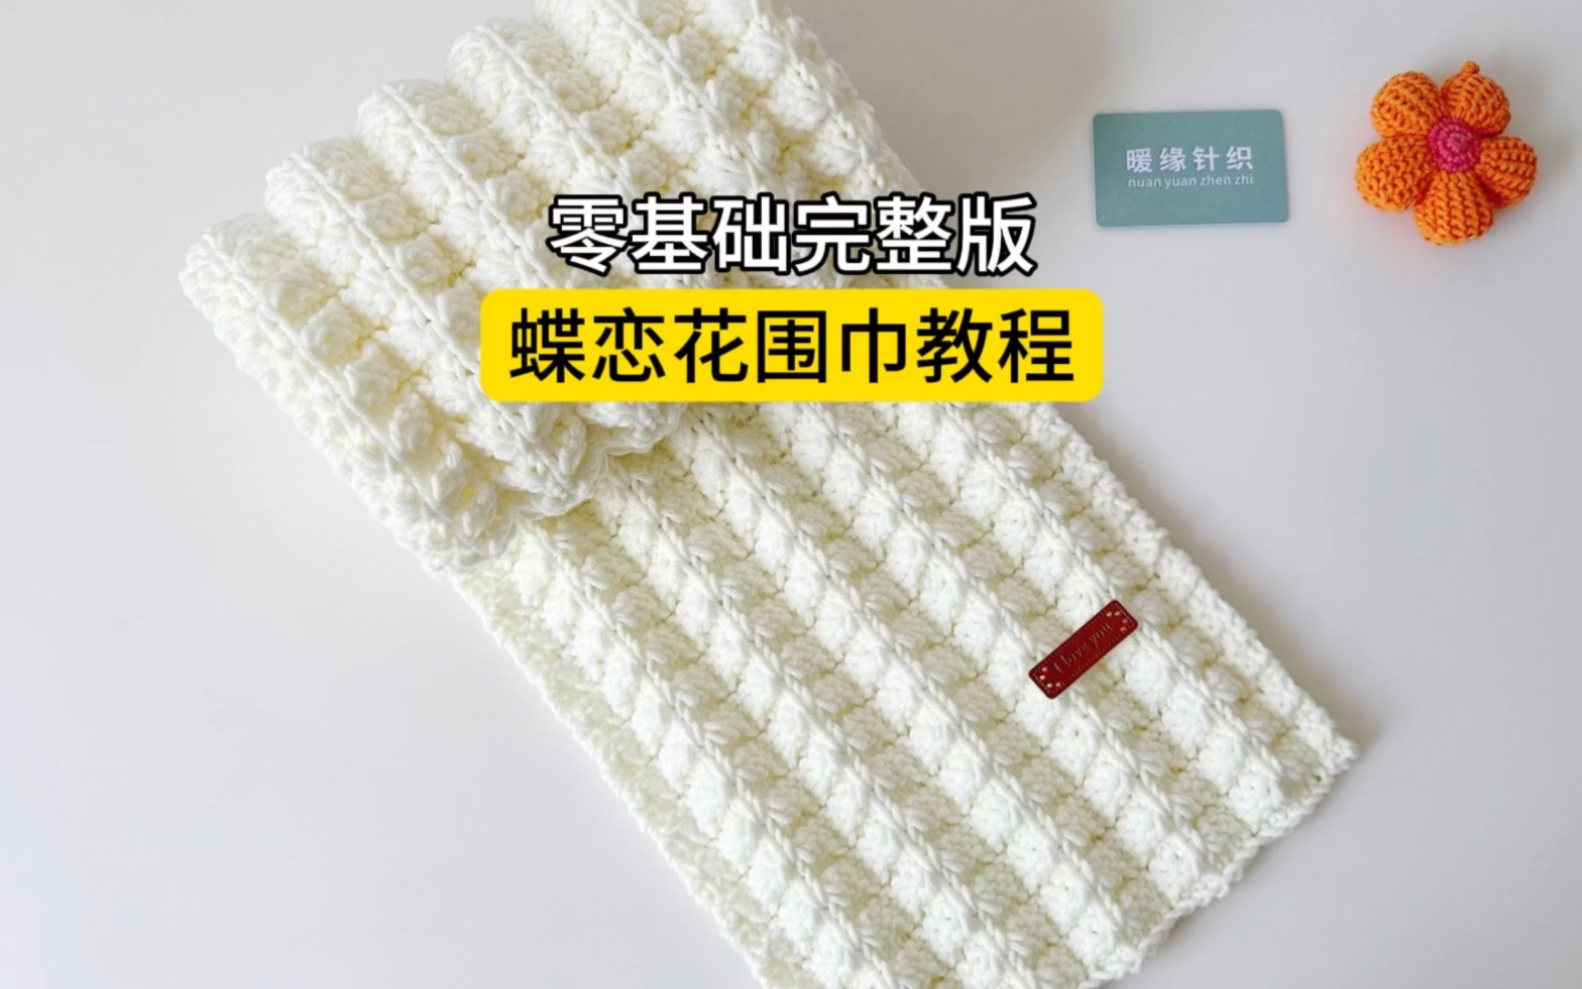 小草花围巾编织教程图片